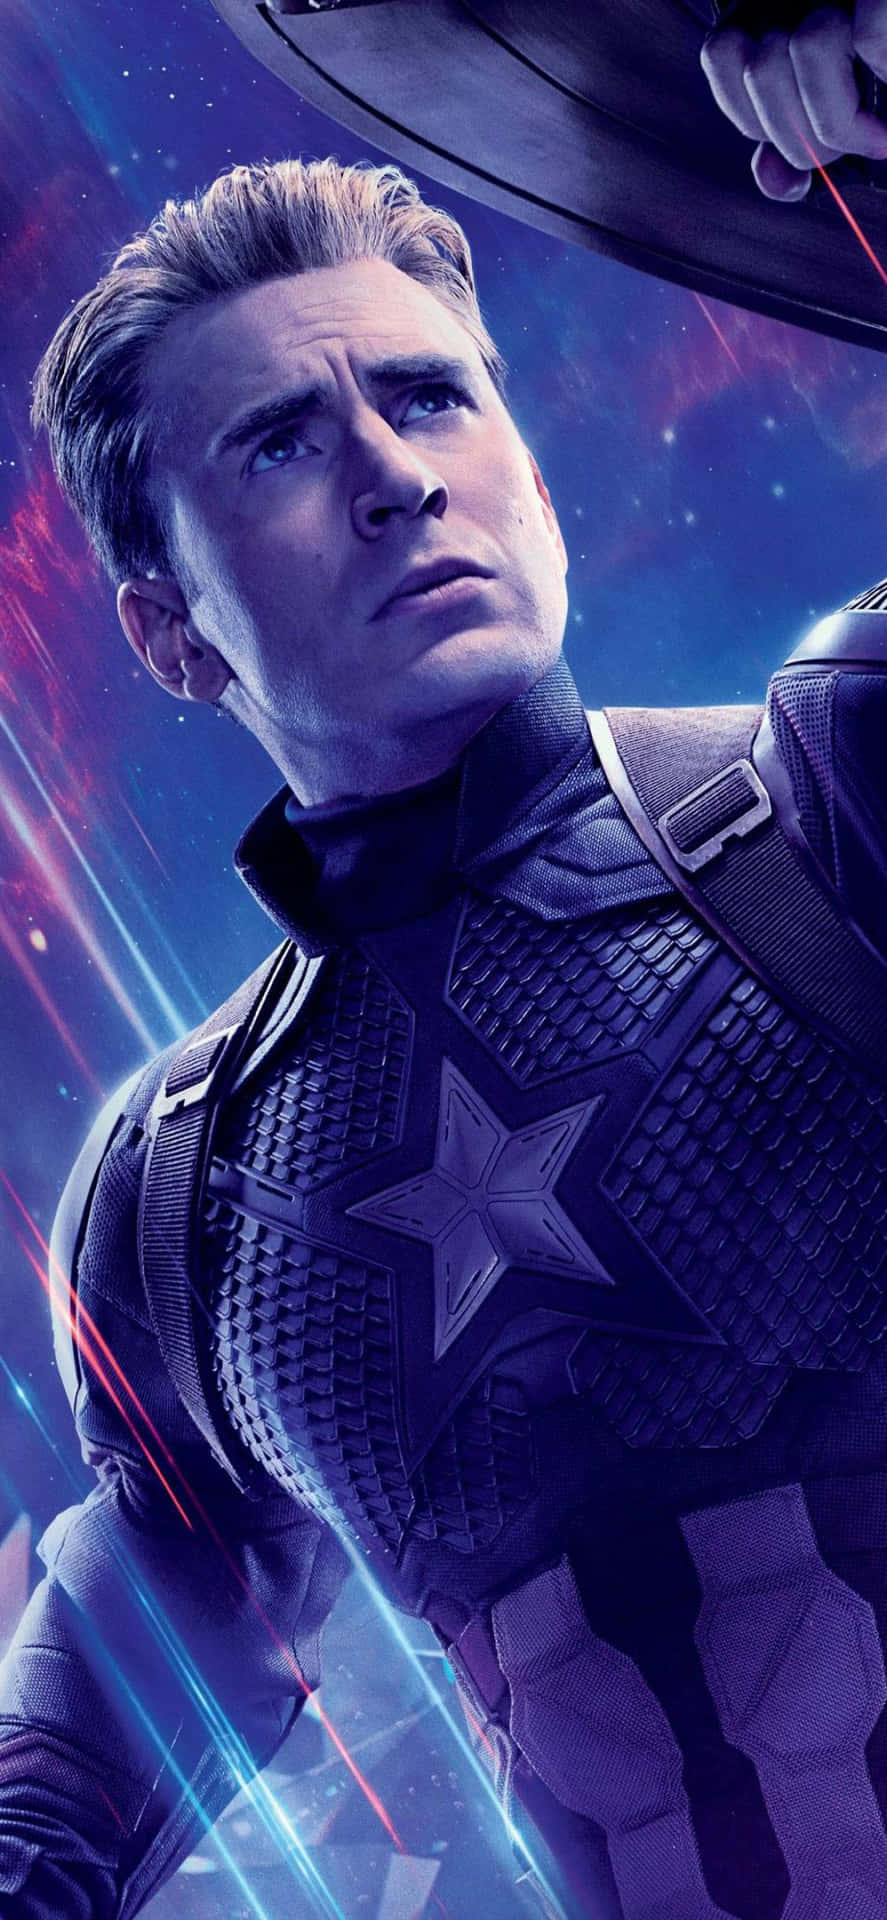 Sfondodi Chris Evans, Attore Americano, Nel Ruolo Di Captain America In Avengers: Endgame.